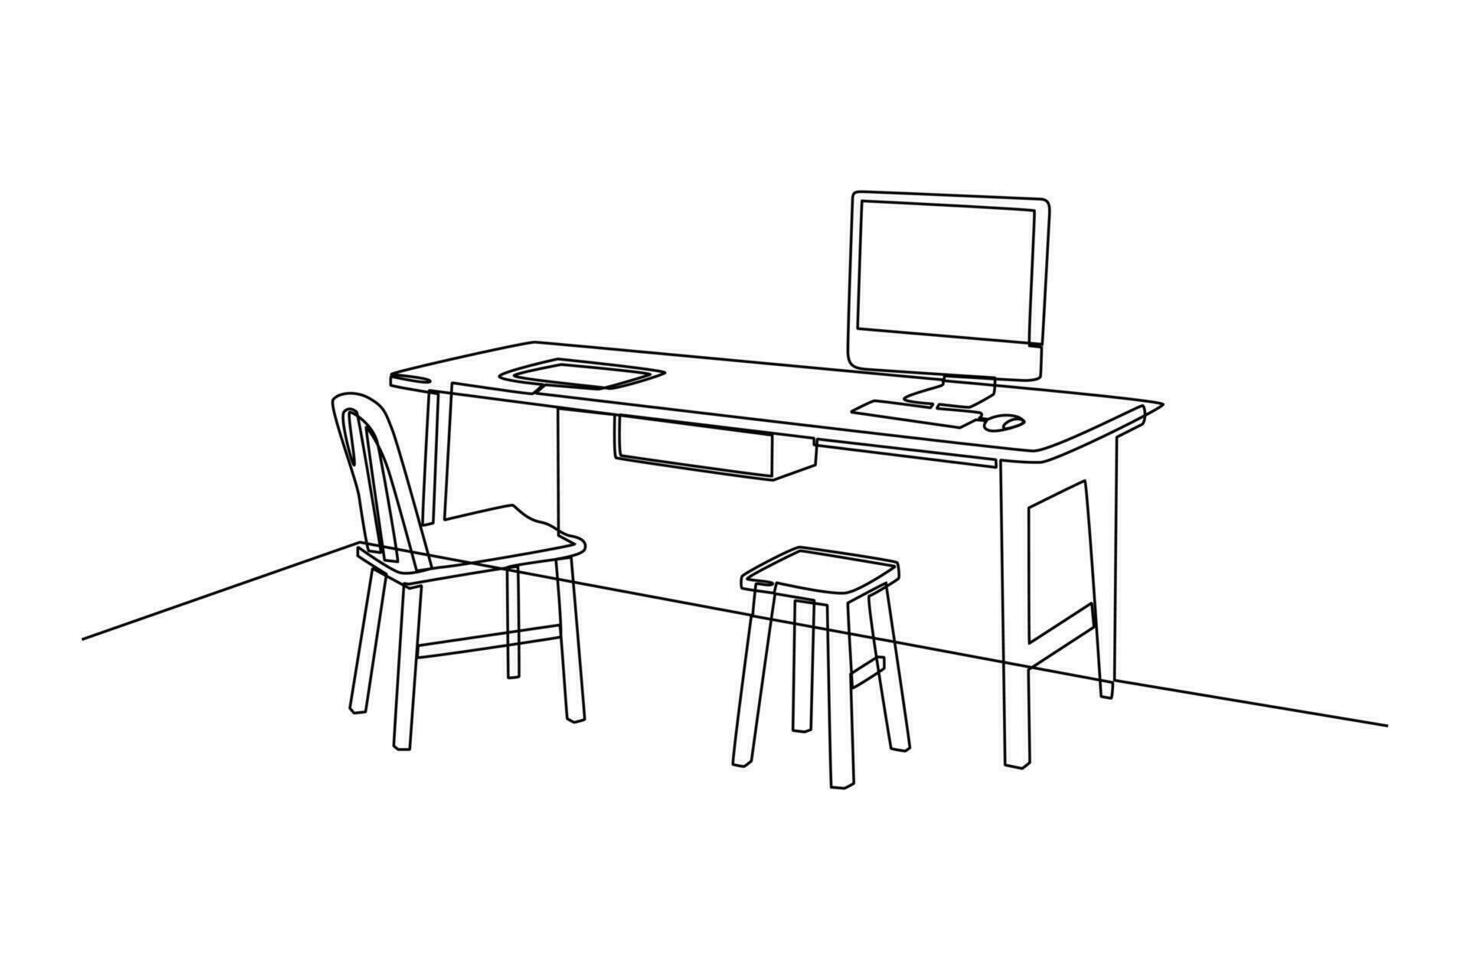 single een lijn tekening kantoor werkstation meubilair interieur concept. doorlopend lijn trek ontwerp grafisch vector illustratie.